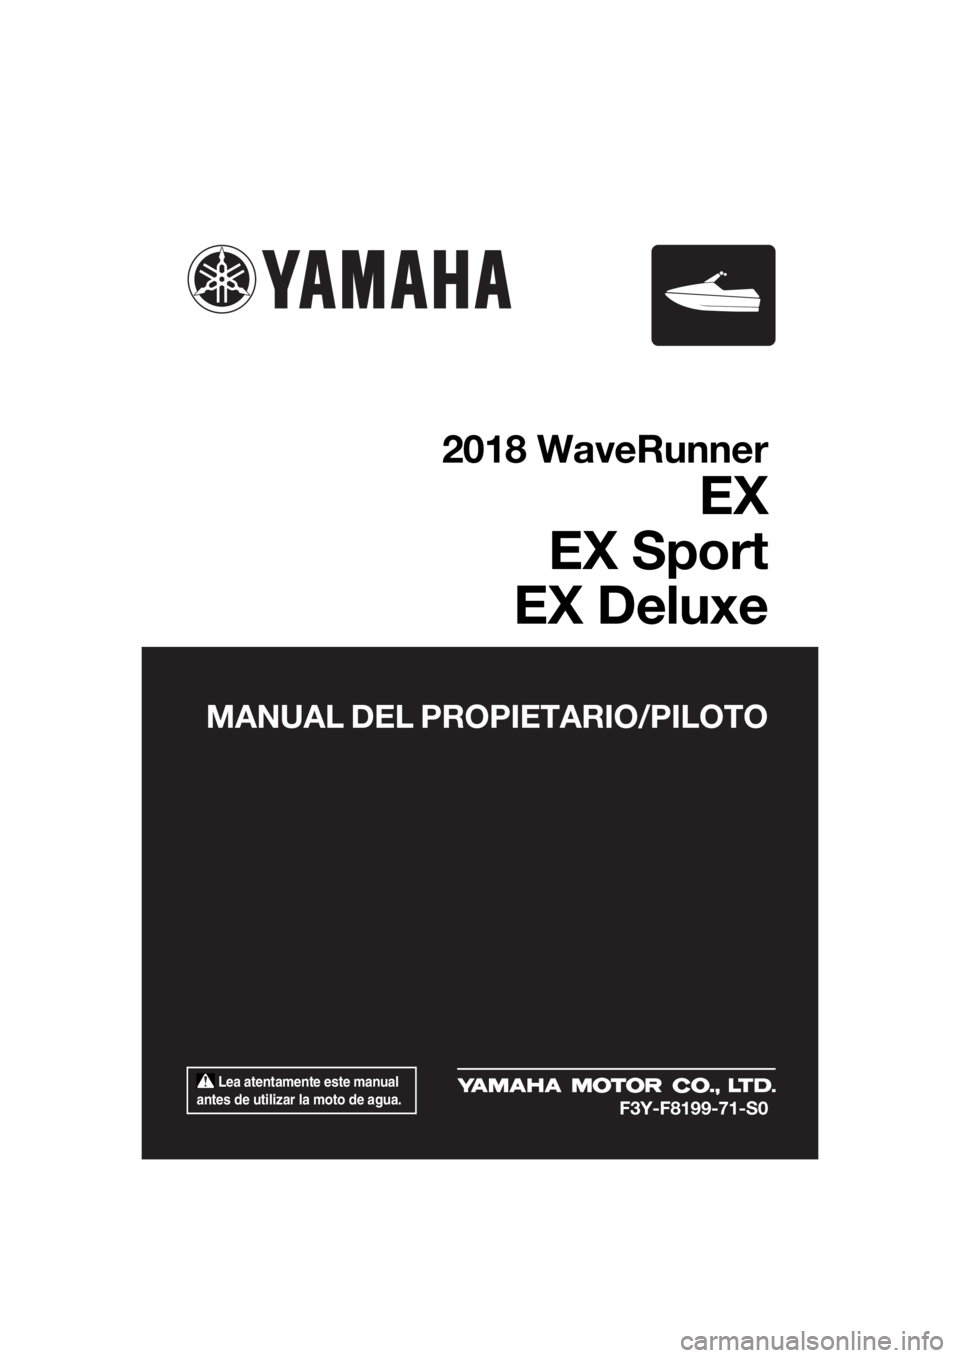 YAMAHA EX SPORT 2018  Manuale de Empleo (in Spanish)  Lea atentamente este manual 
antes de utilizar la moto de agua.
MANUAL DEL PROPIETARIO/PILOTO
2018 WaveRunner
EX
EX Sport
EX Deluxe
F3Y-F8199-71-S0
UF3Y71S0.book  Page 1  Wednesday, May 24, 2017  3:3